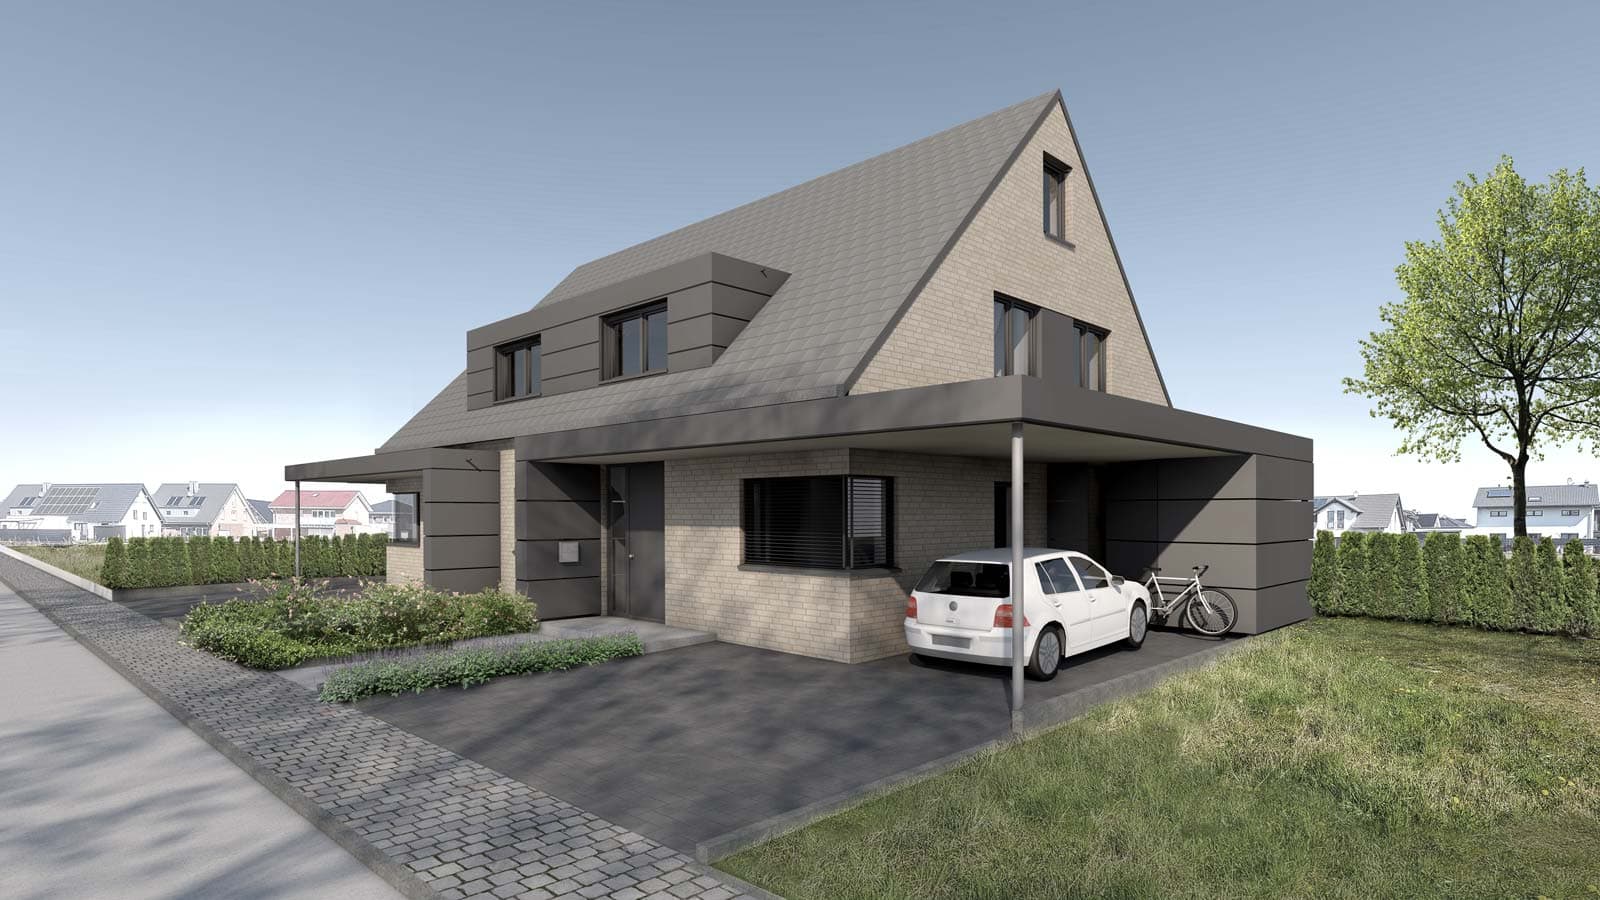 Neubau Doppelhaus in Nordwalde, Waterkamp-Immobilien, Holtfrerich Architekten